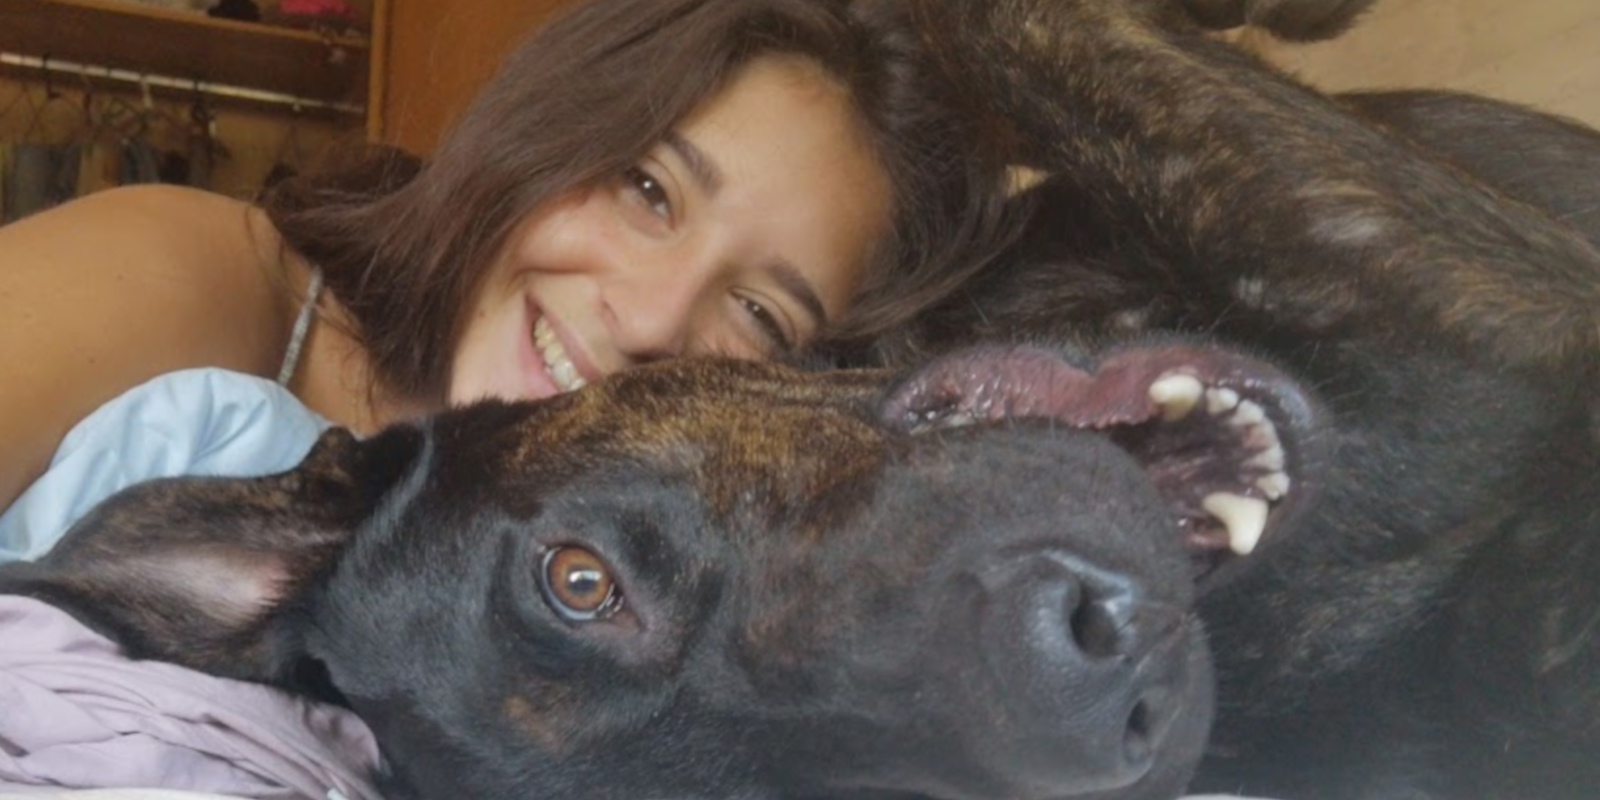 Ariadna i Kronk, cofundadors de Amigos del Kronk, ensinistrament de gossos a Sant Cugat. FOTO: Cedida